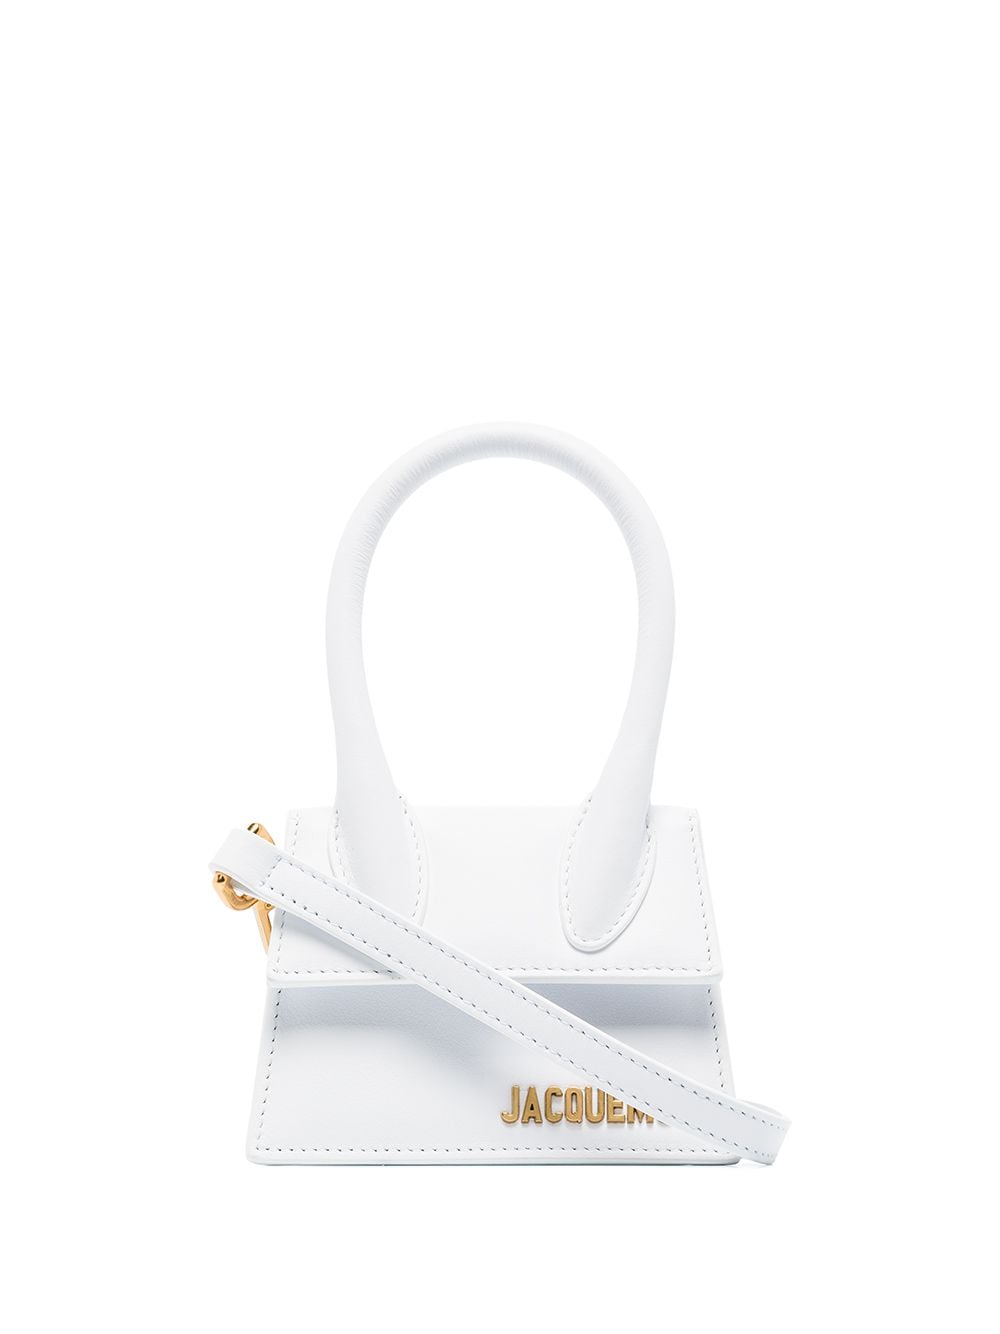 Jacquemus Le Chiquito mini bag - White von Jacquemus